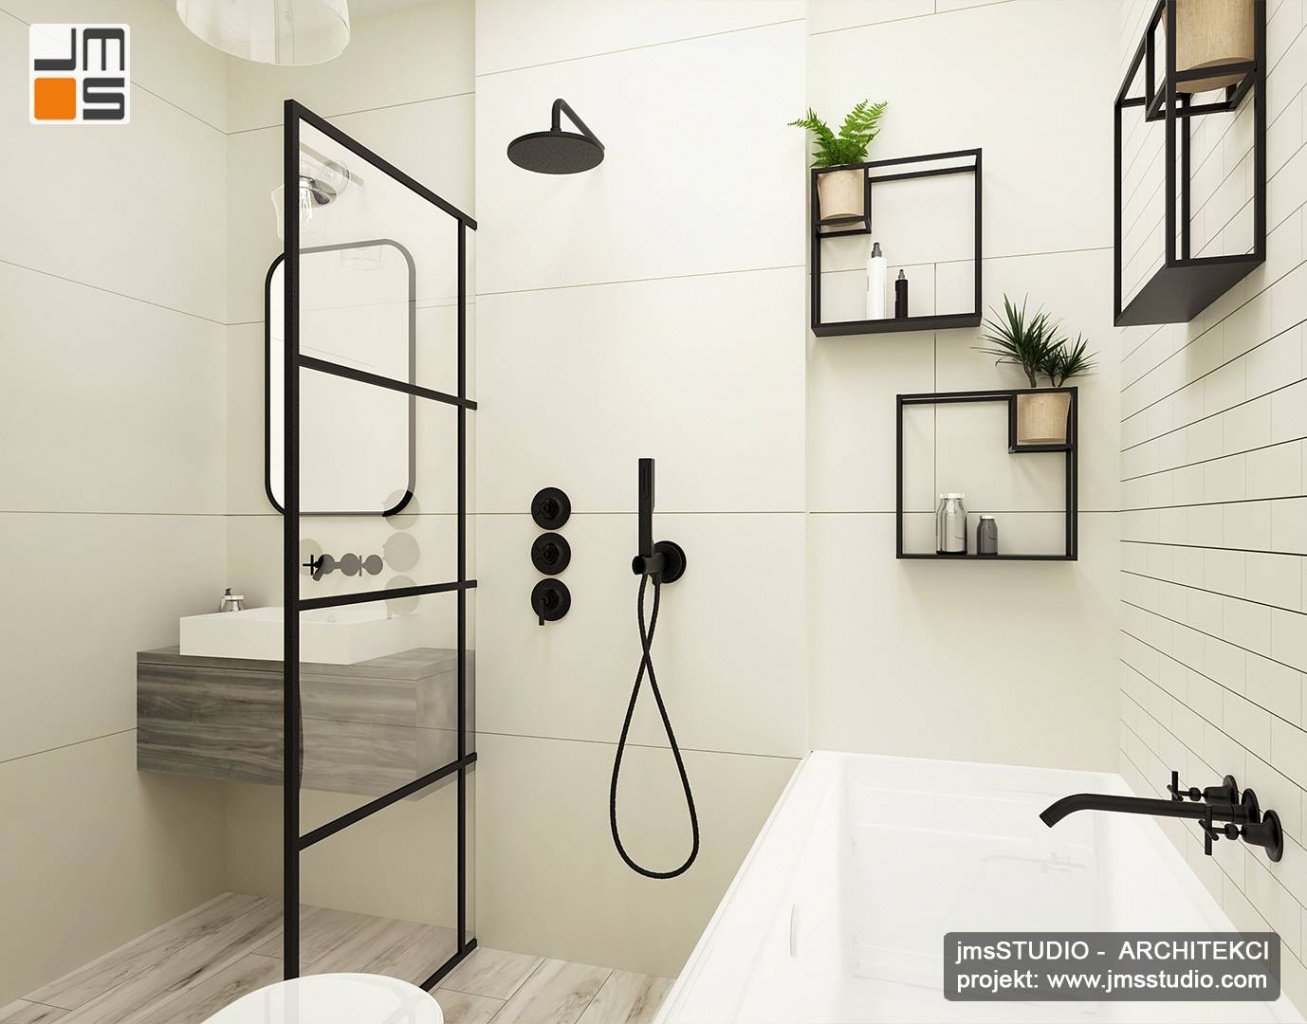 Czarne elementy dekoracyjne  ze stali to kwietniki i parawan prysznica zaprojektowana indywidualnie dla Klienta . Wnętrze łazienki jest jasne i optycznie powiększone dzięki  zastosowaniu drobnych płytek w kolorze białym